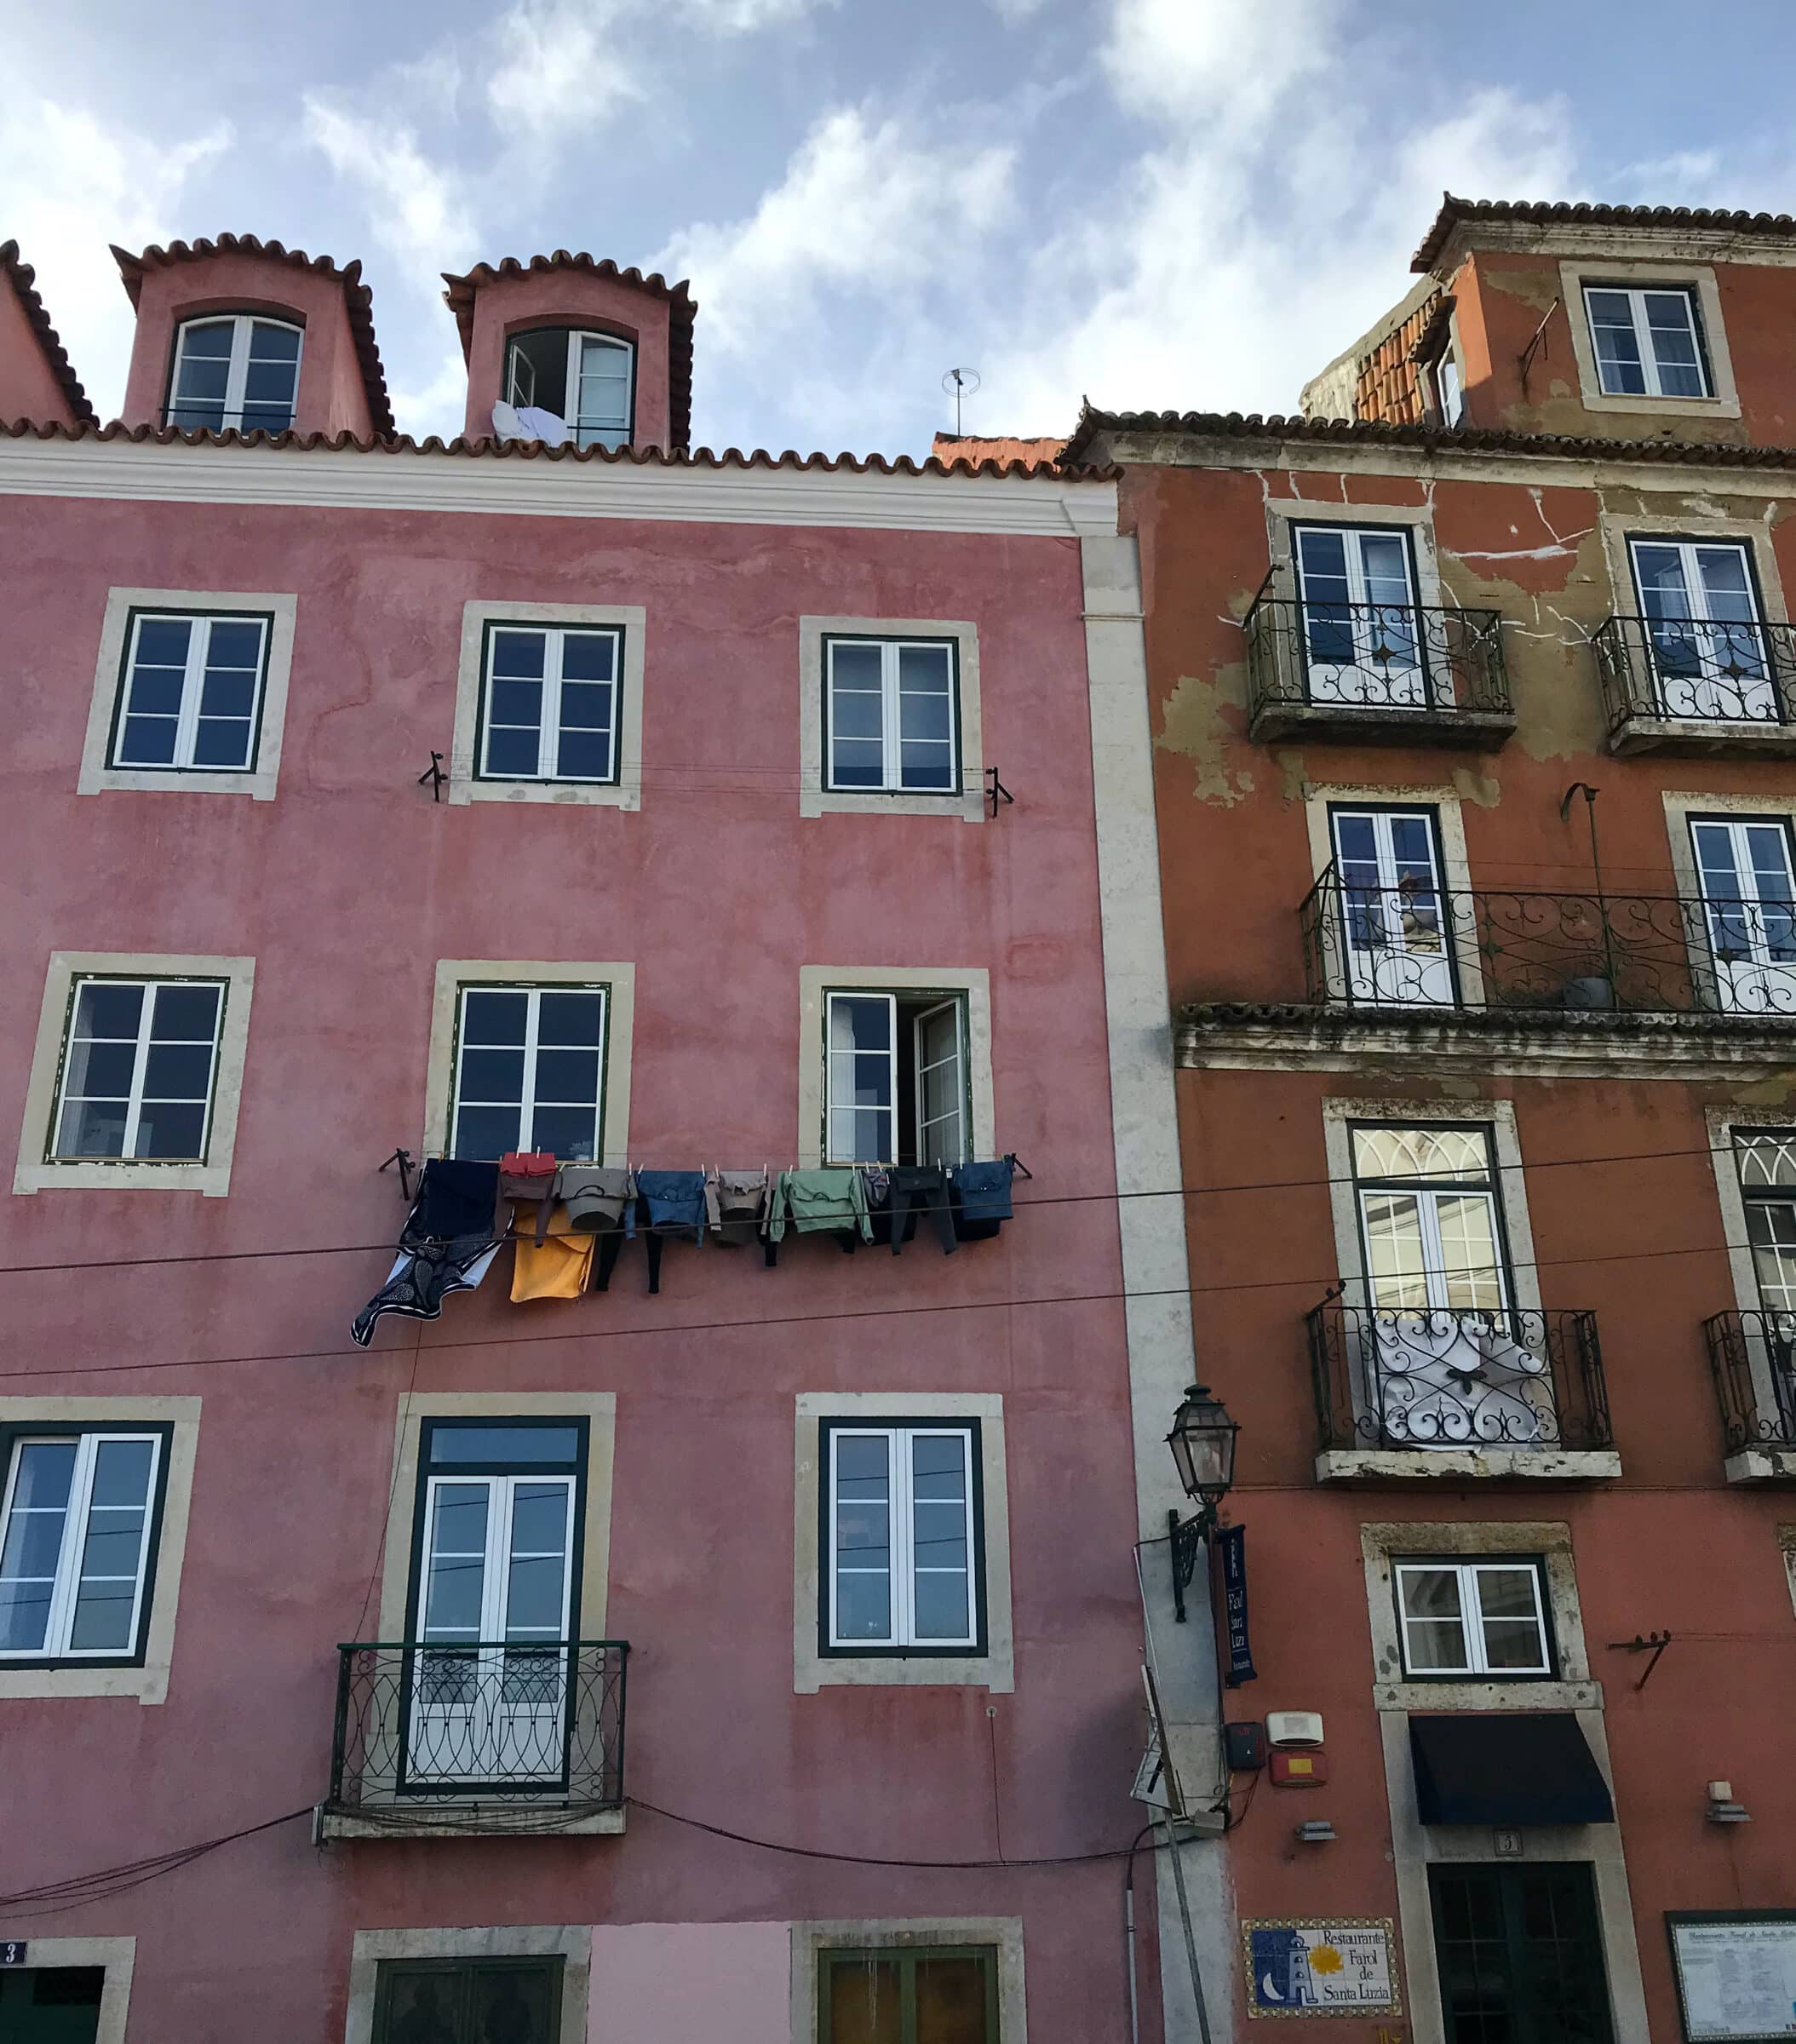 Casas coloridas en la bulliciosa ciudad de Lisboa